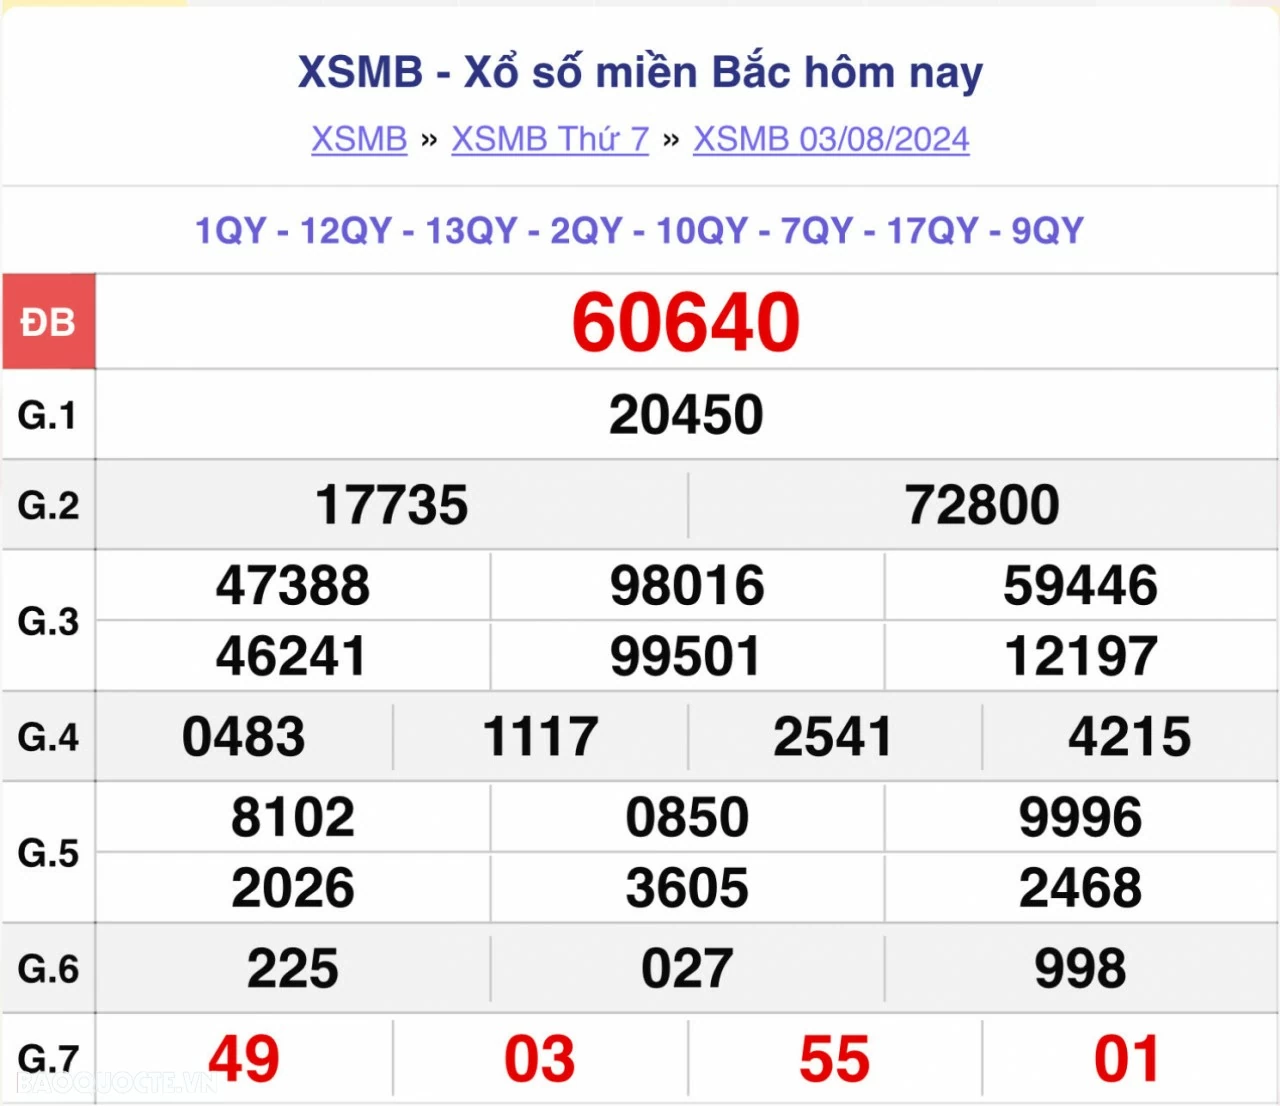 XSMB 3/8, kết quả xổ số miền Bắc thứ 7 ngày 3/8/2024. dự đoán XSMB 3/8/2024